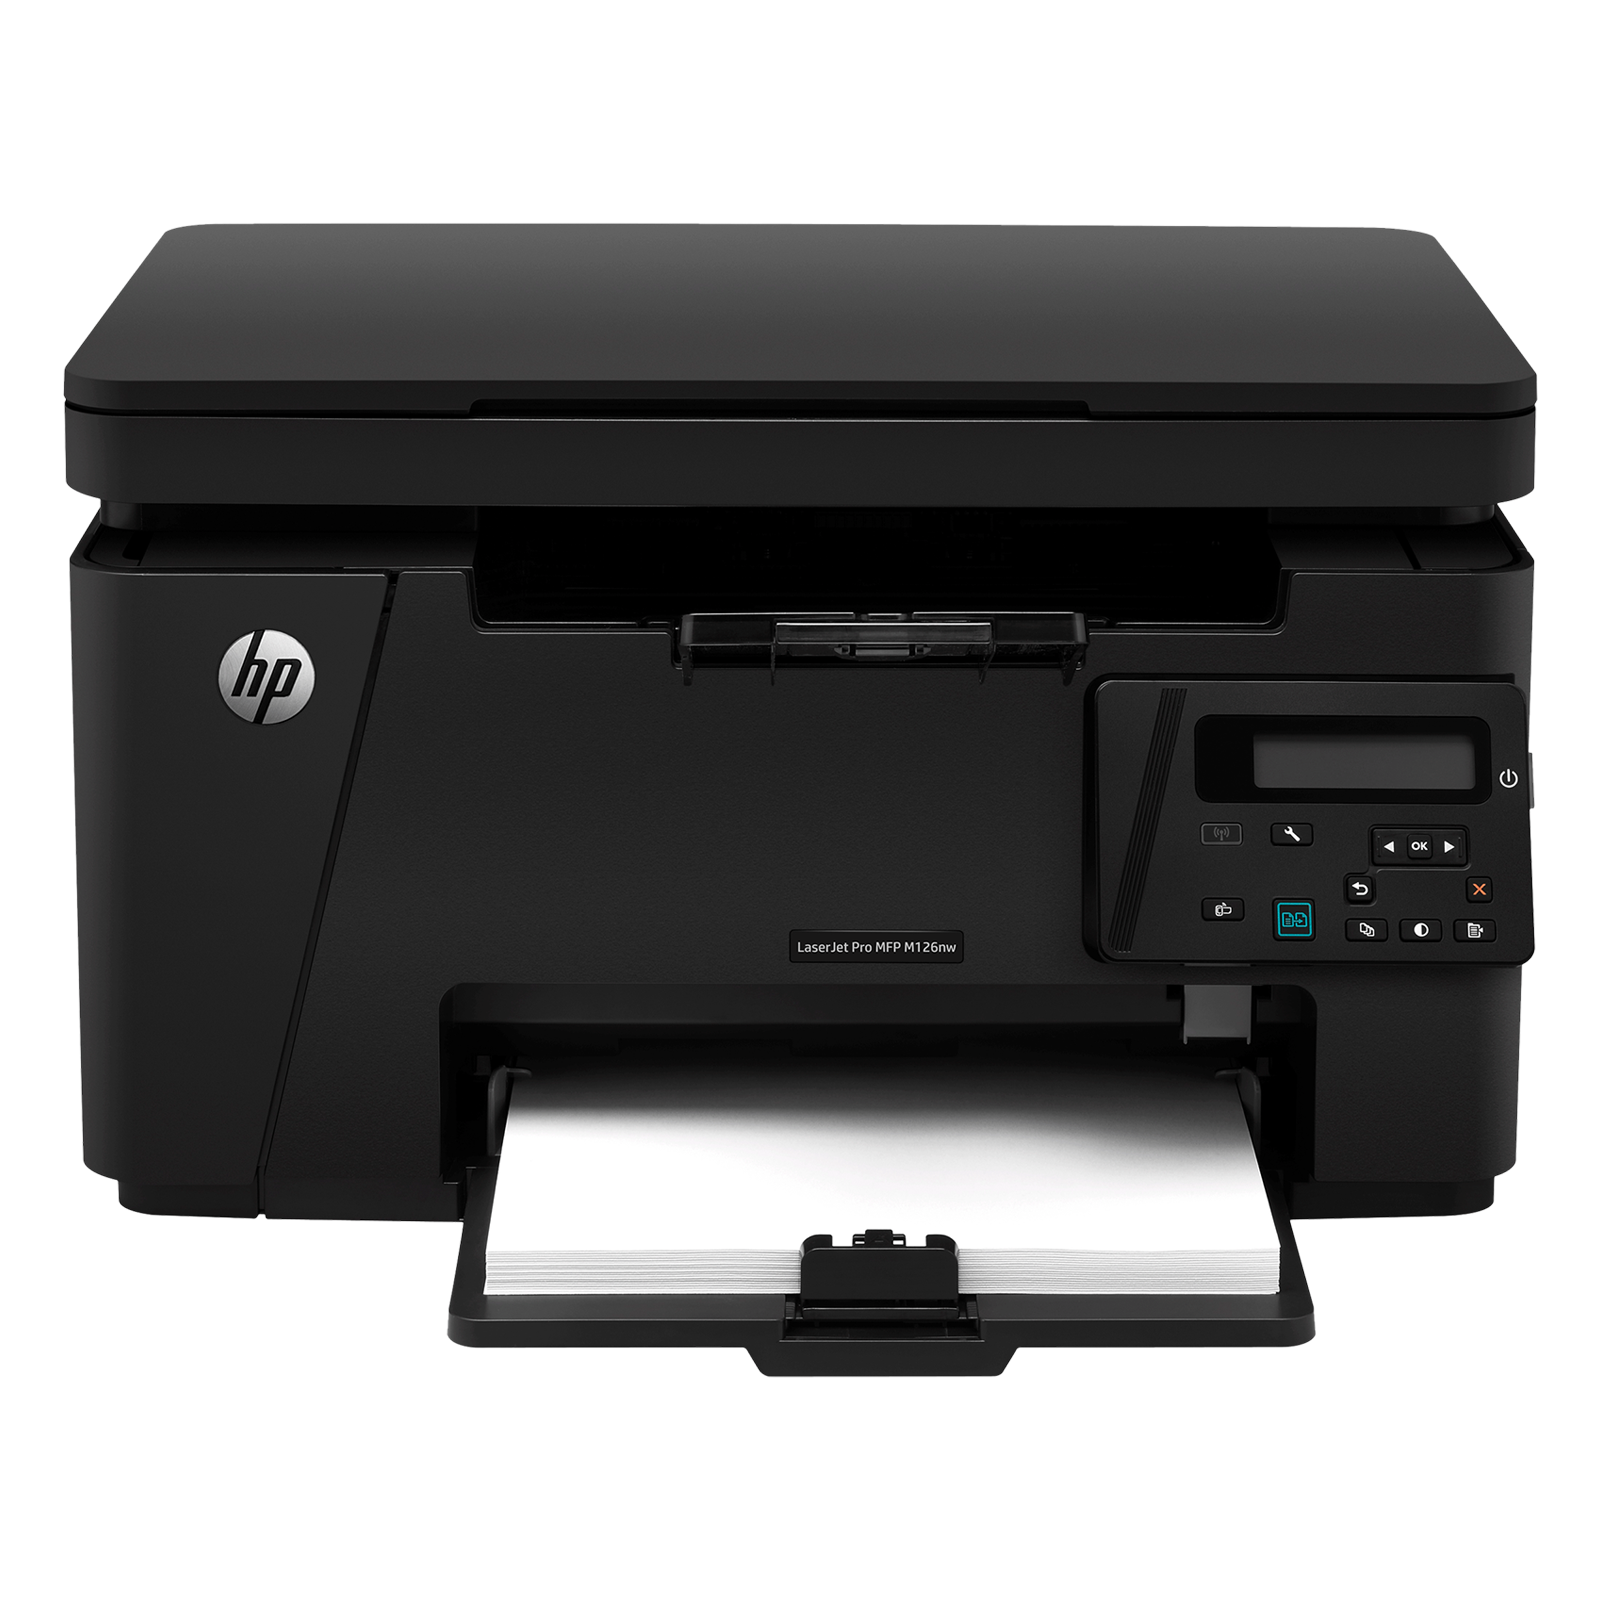 HP LaserJet Pro M126nw Wireless Black & White Multi-Function Laserjet Printer (Wireless Direct Printing, CZ175A, Black)